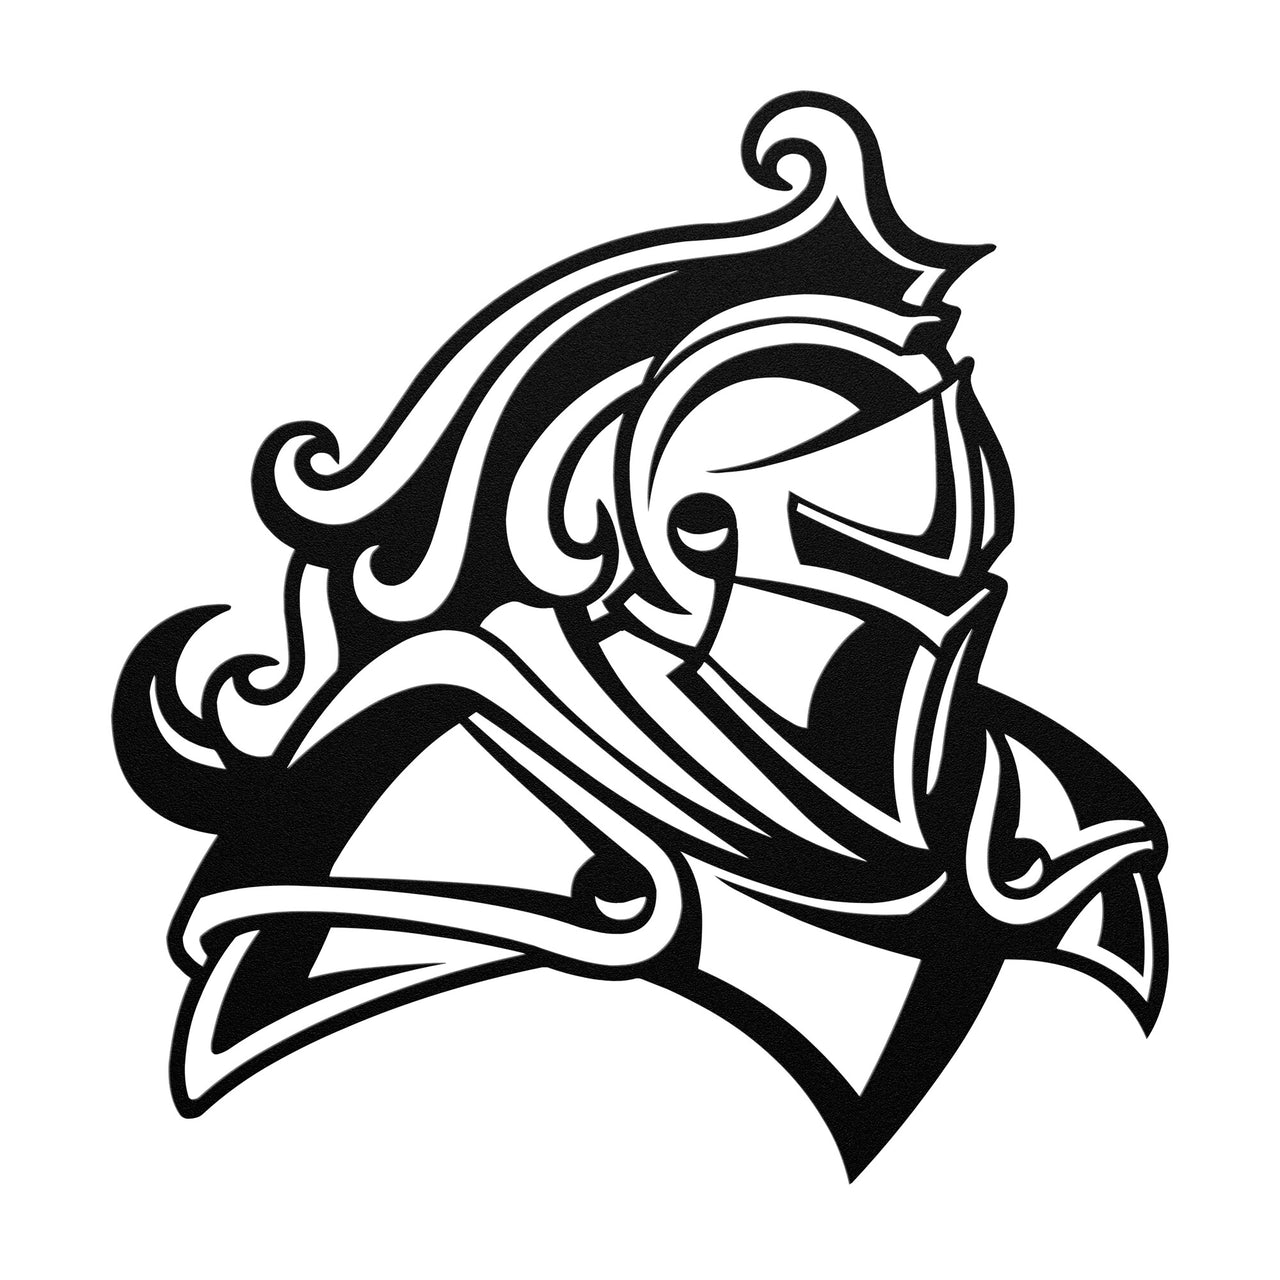 Knight head - mascot